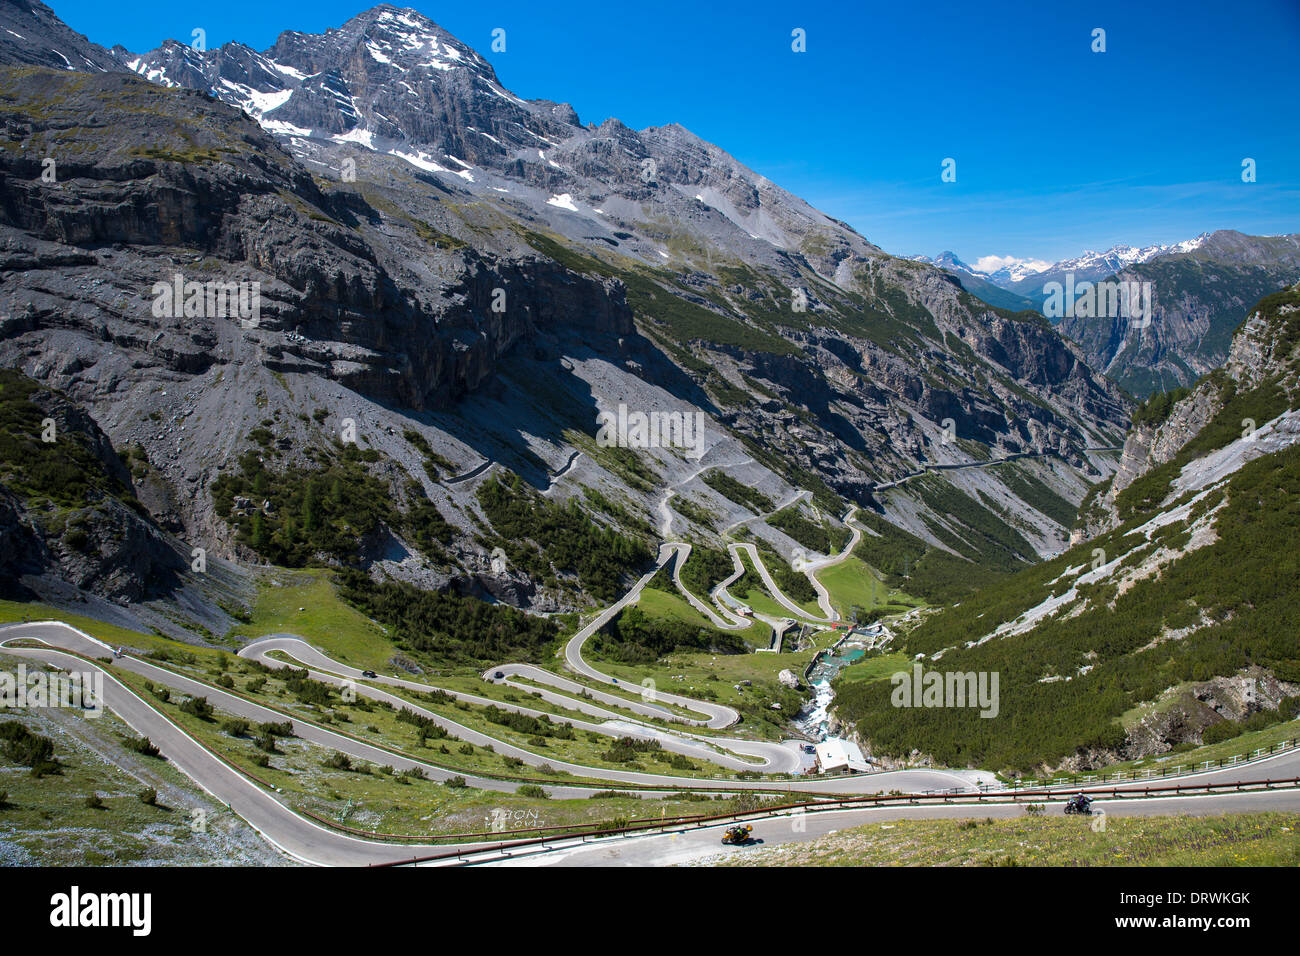 Les motos sur le col du Stelvio, passo dello Stelvio Stilfser Joch, Bormio,  sur la route de Trafoi dans les Alpes, le nord de l'Italie Photo Stock -  Alamy